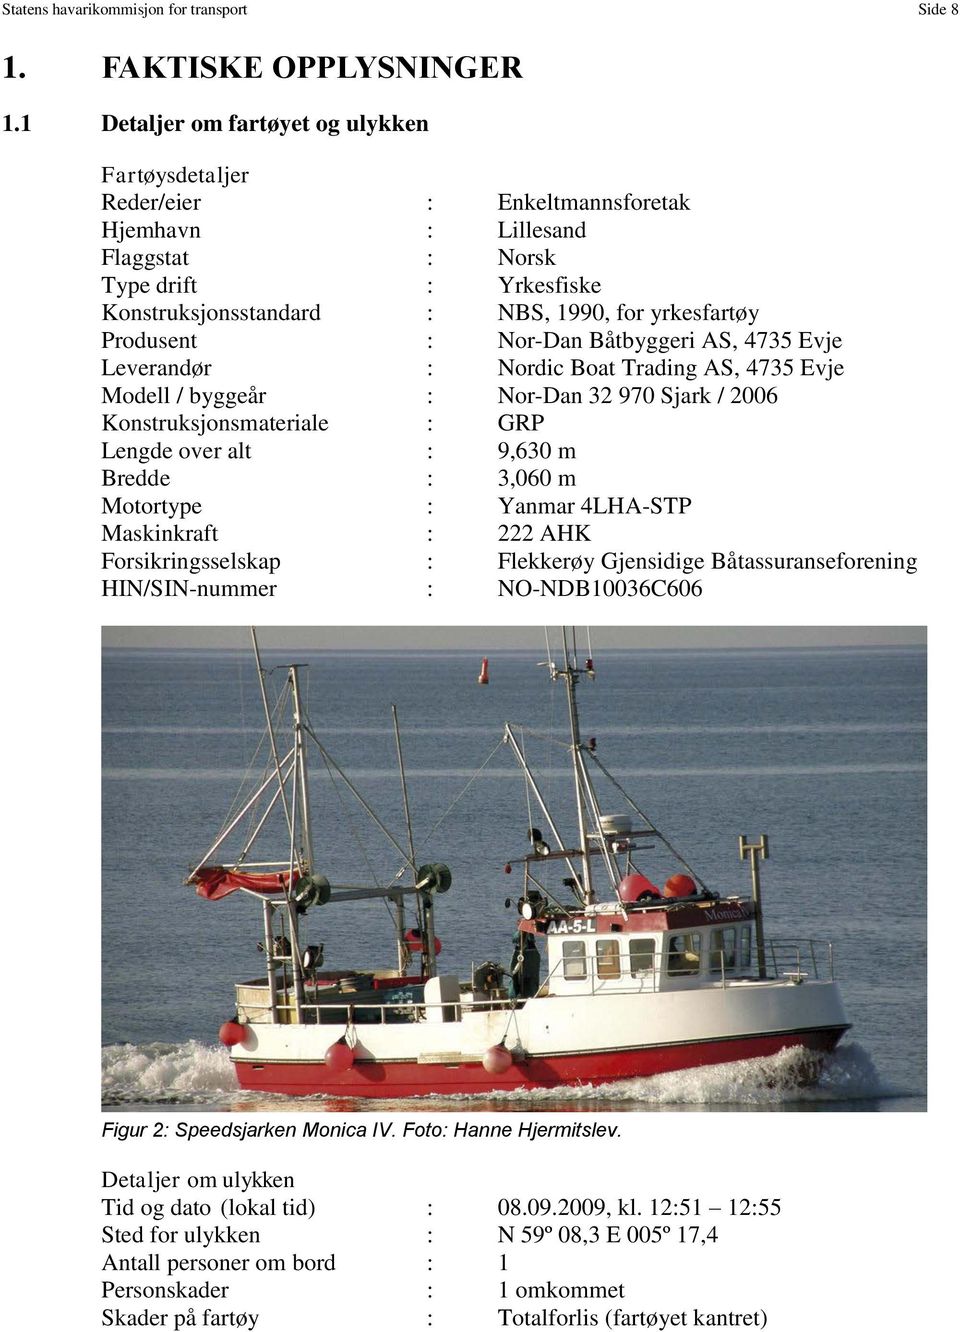 Produsent : Nor-Dan Båtbyggeri AS, 4735 Evje Leverandør : Nordic Boat Trading AS, 4735 Evje Modell / byggeår : Nor-Dan 32 970 Sjark / 2006 Konstruksjonsmateriale : GRP Lengde over alt : 9,630 m